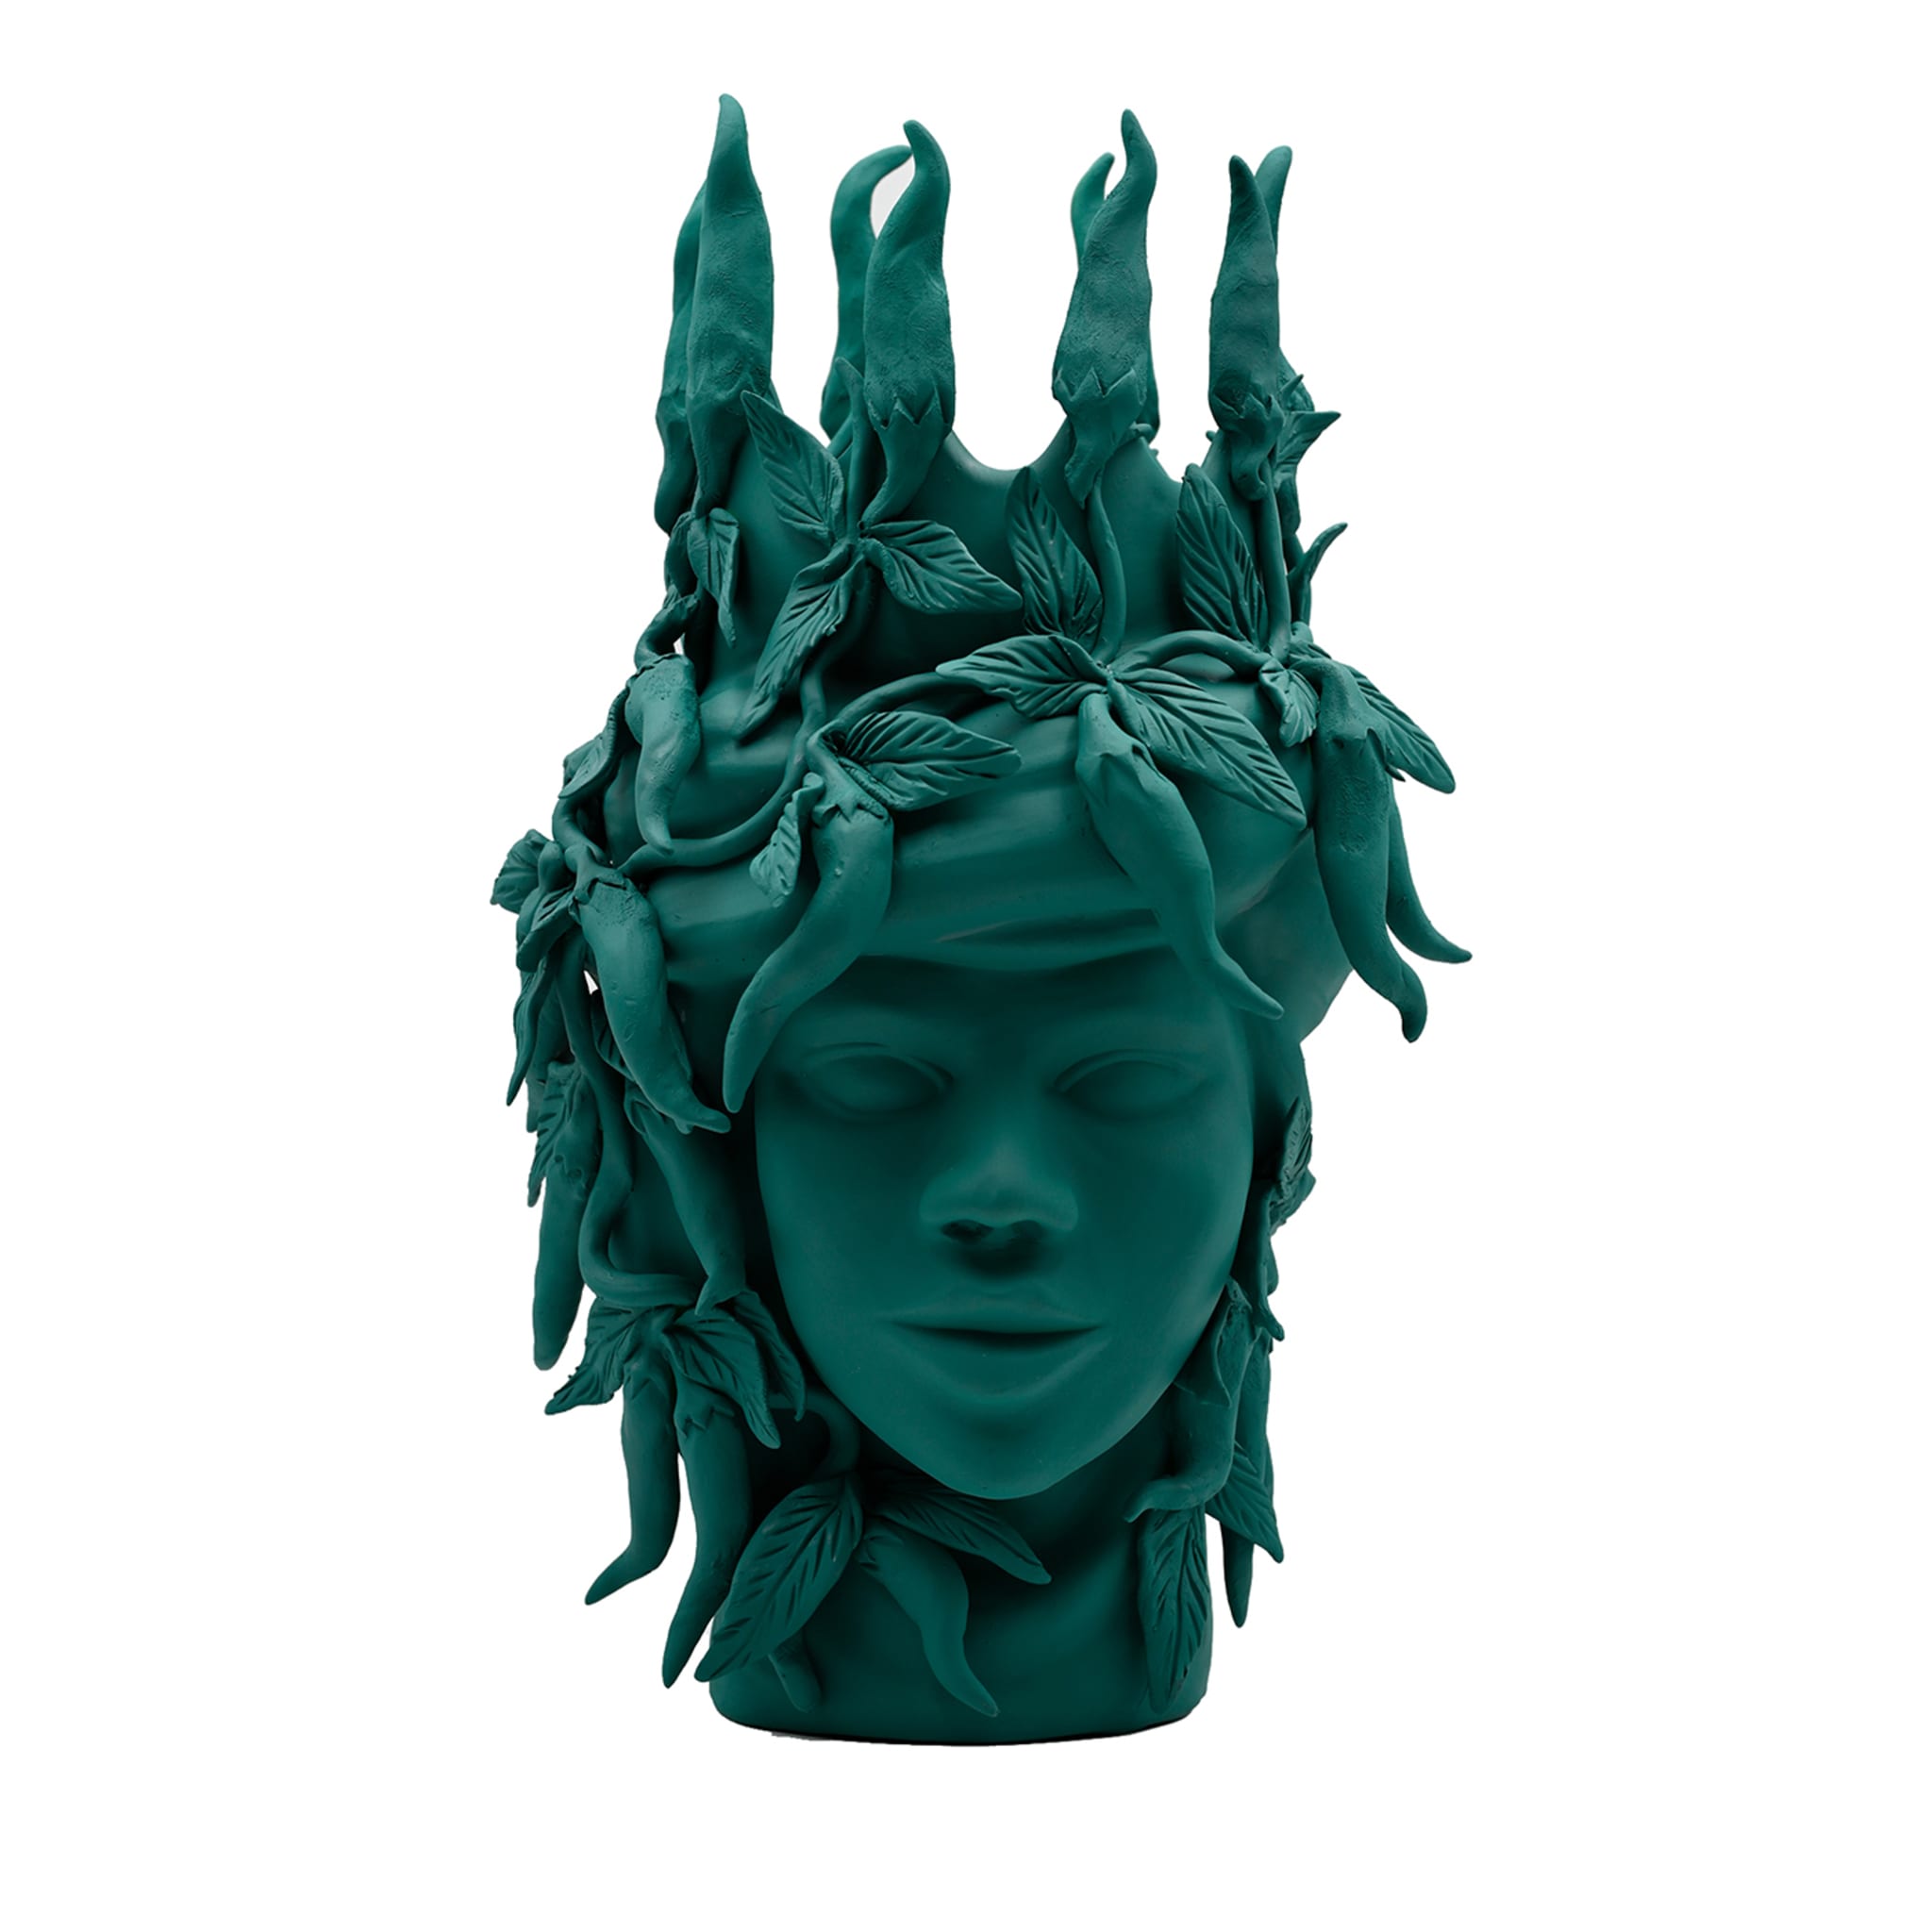 Moor's Head Dark Green Sculpture